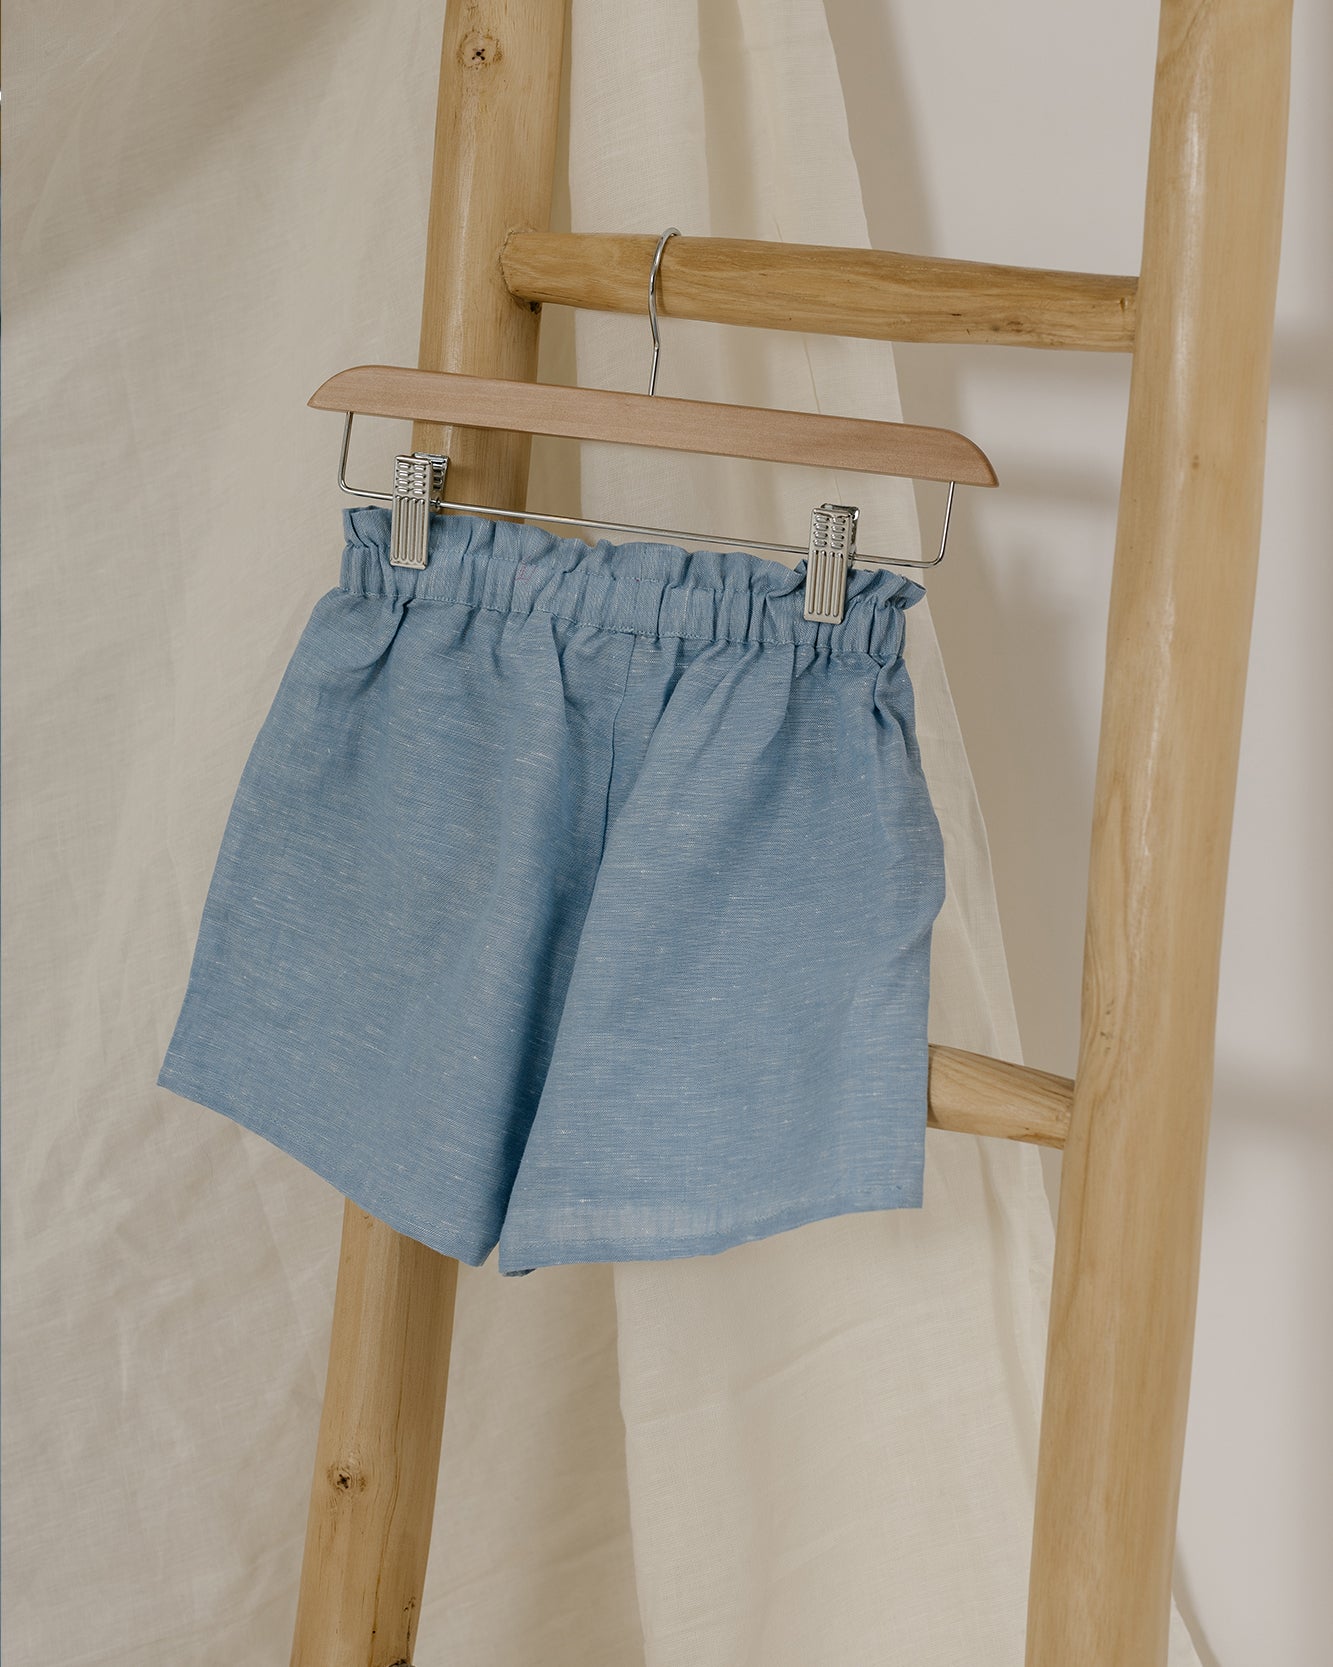 Cottage Style Lace Shorts – Blara Organic House